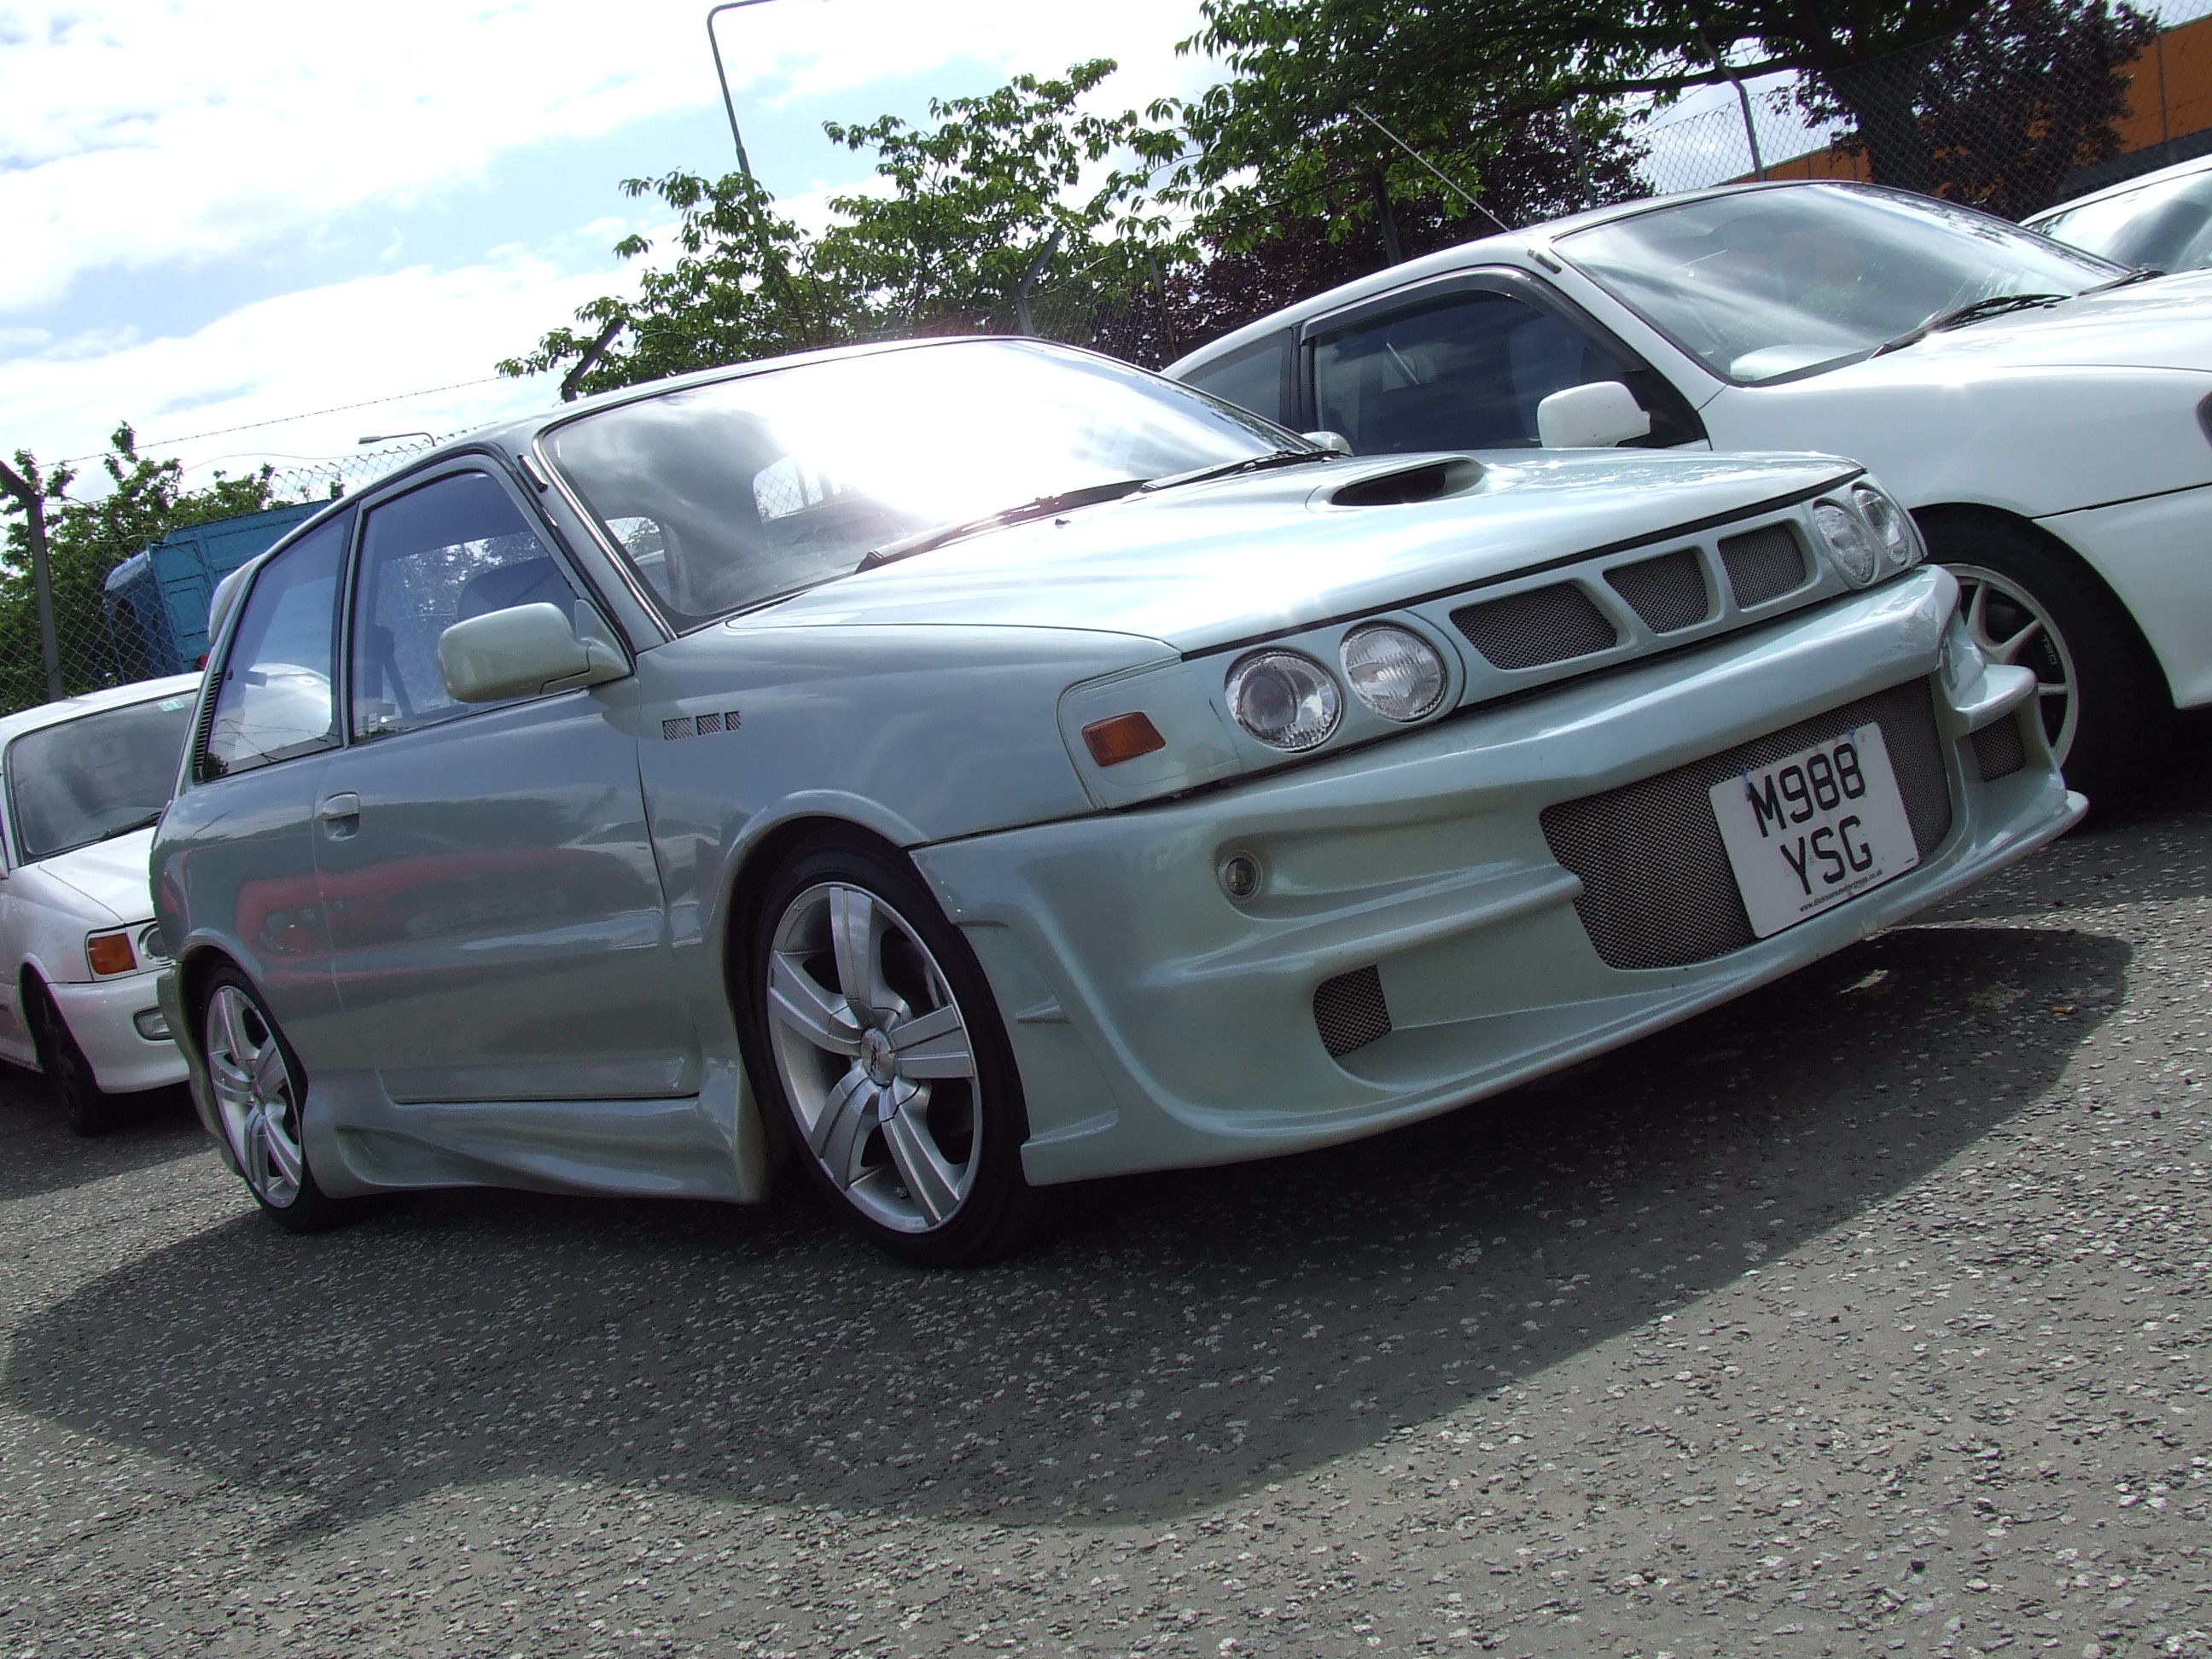 Toyota Starlet GT Turbo | Flickr - Photo Sharing!